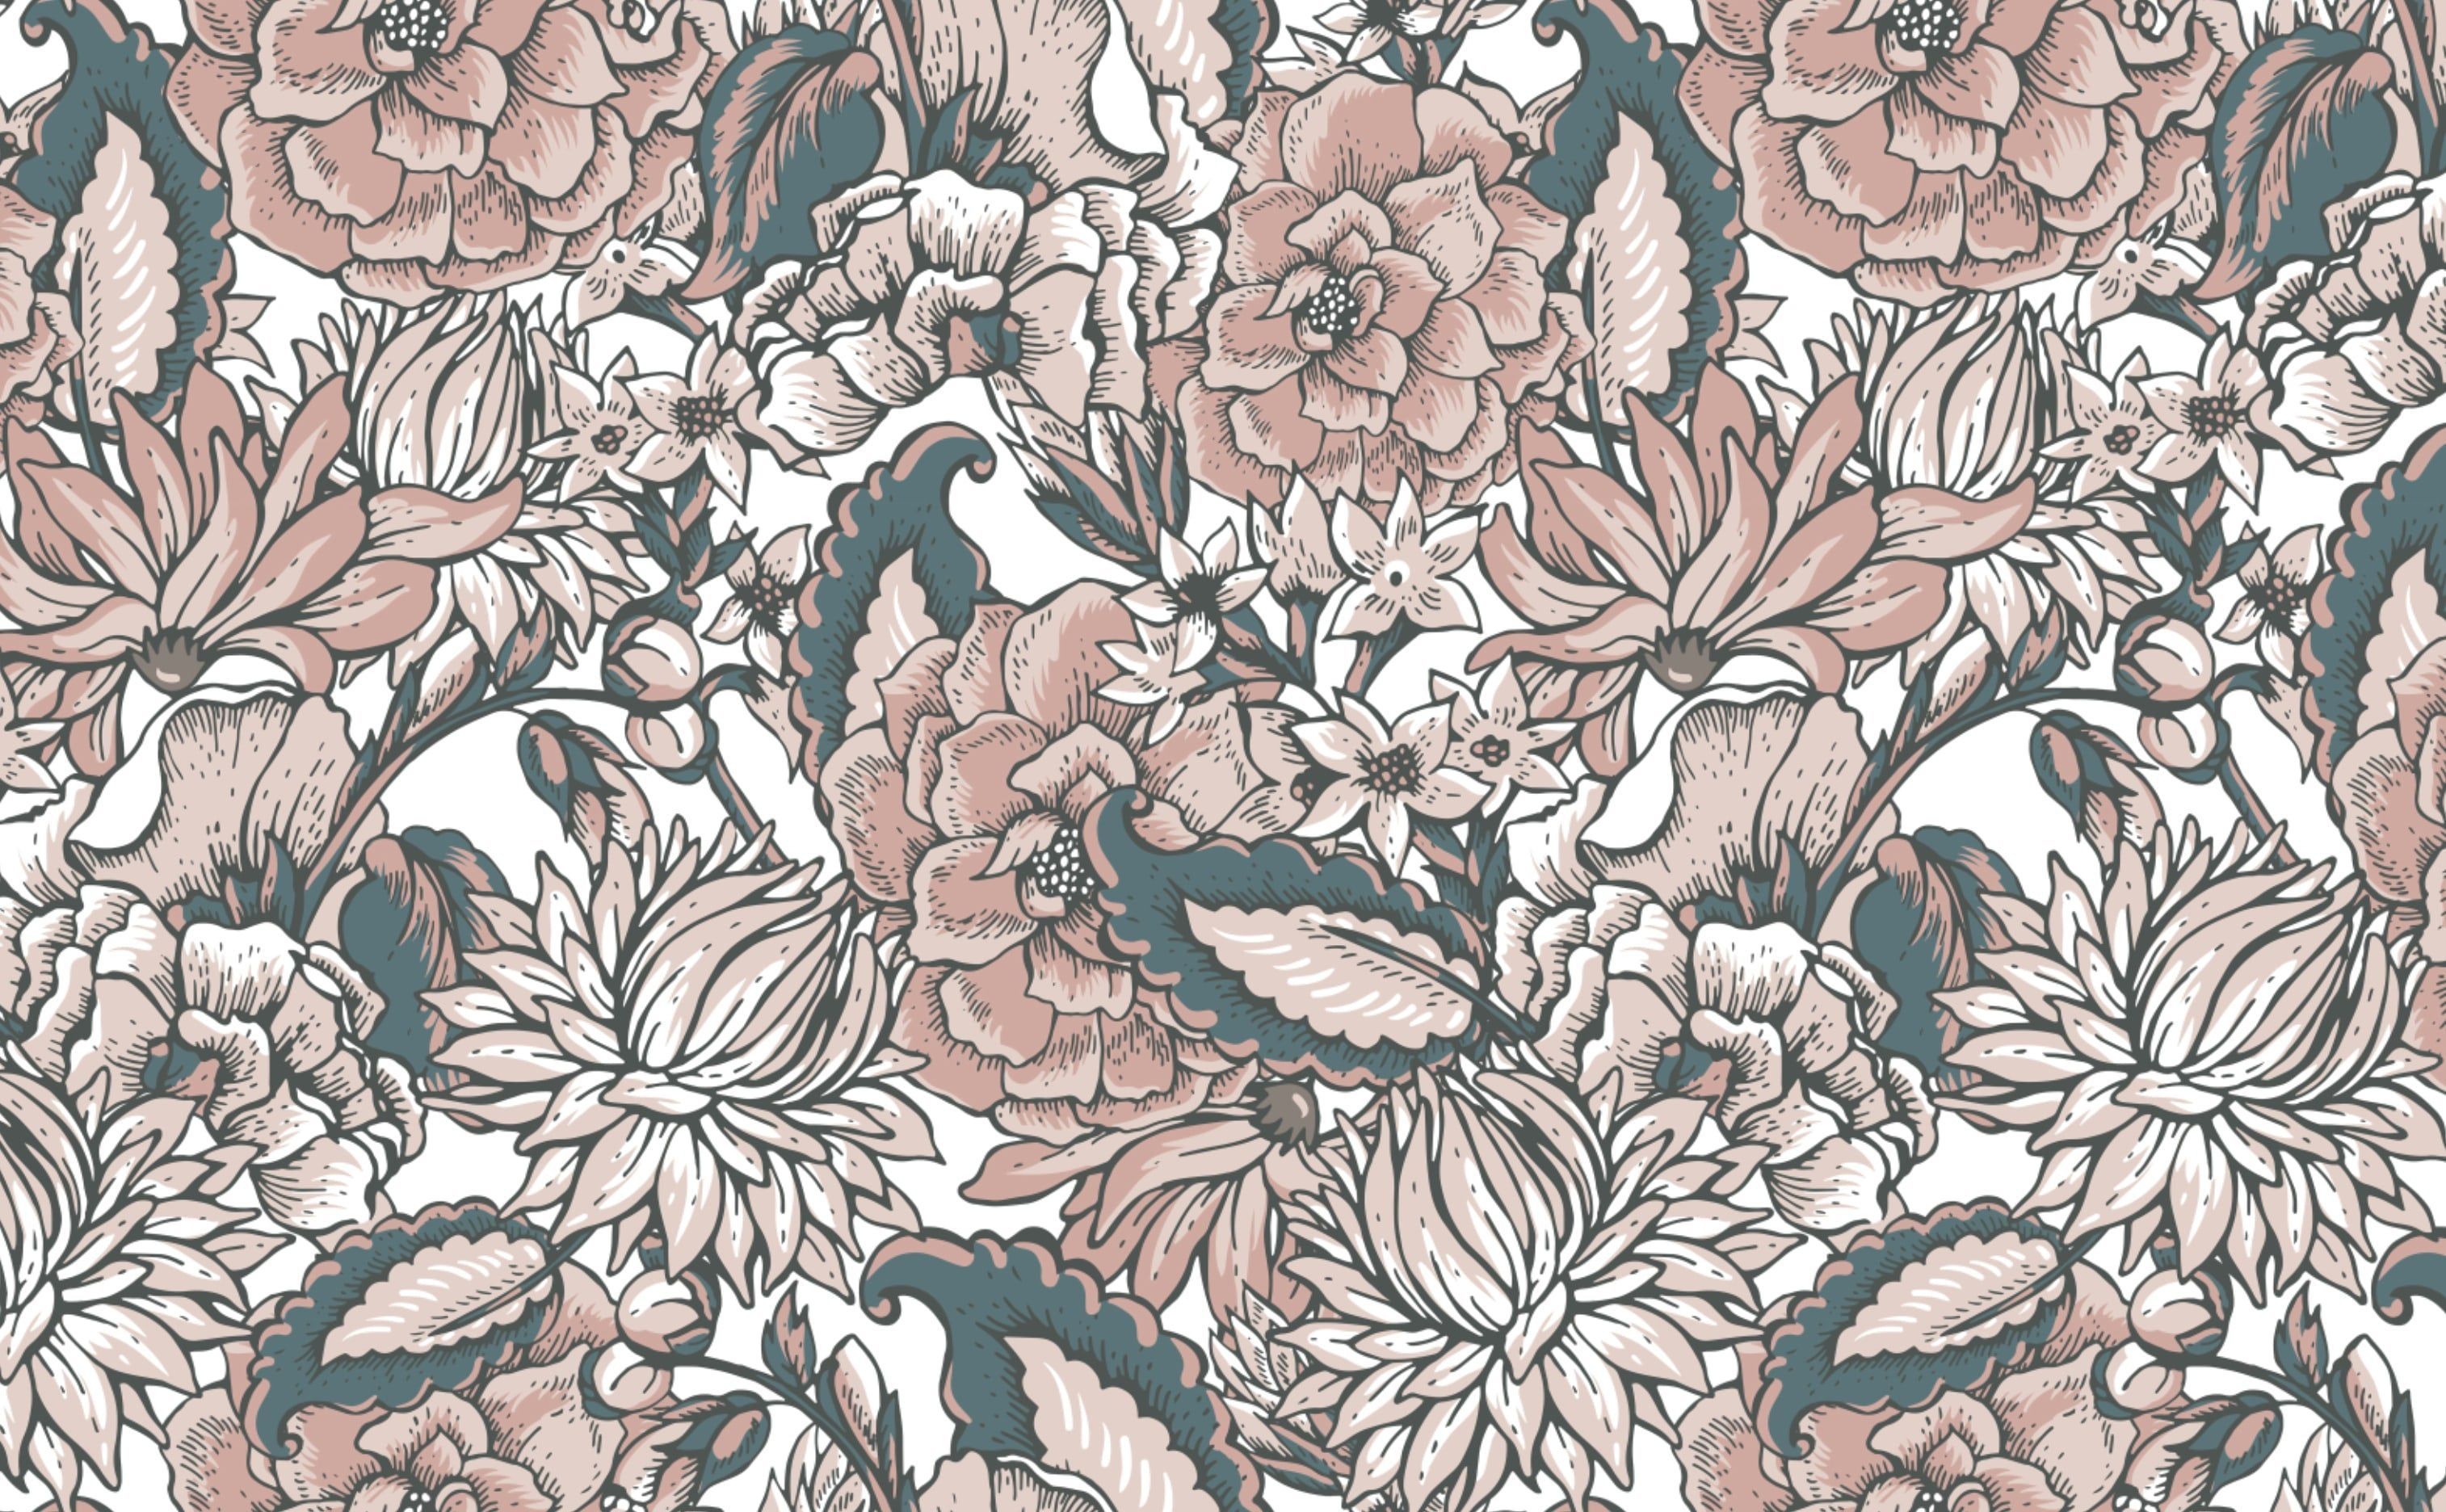 A vintage style floral pattern - Boho